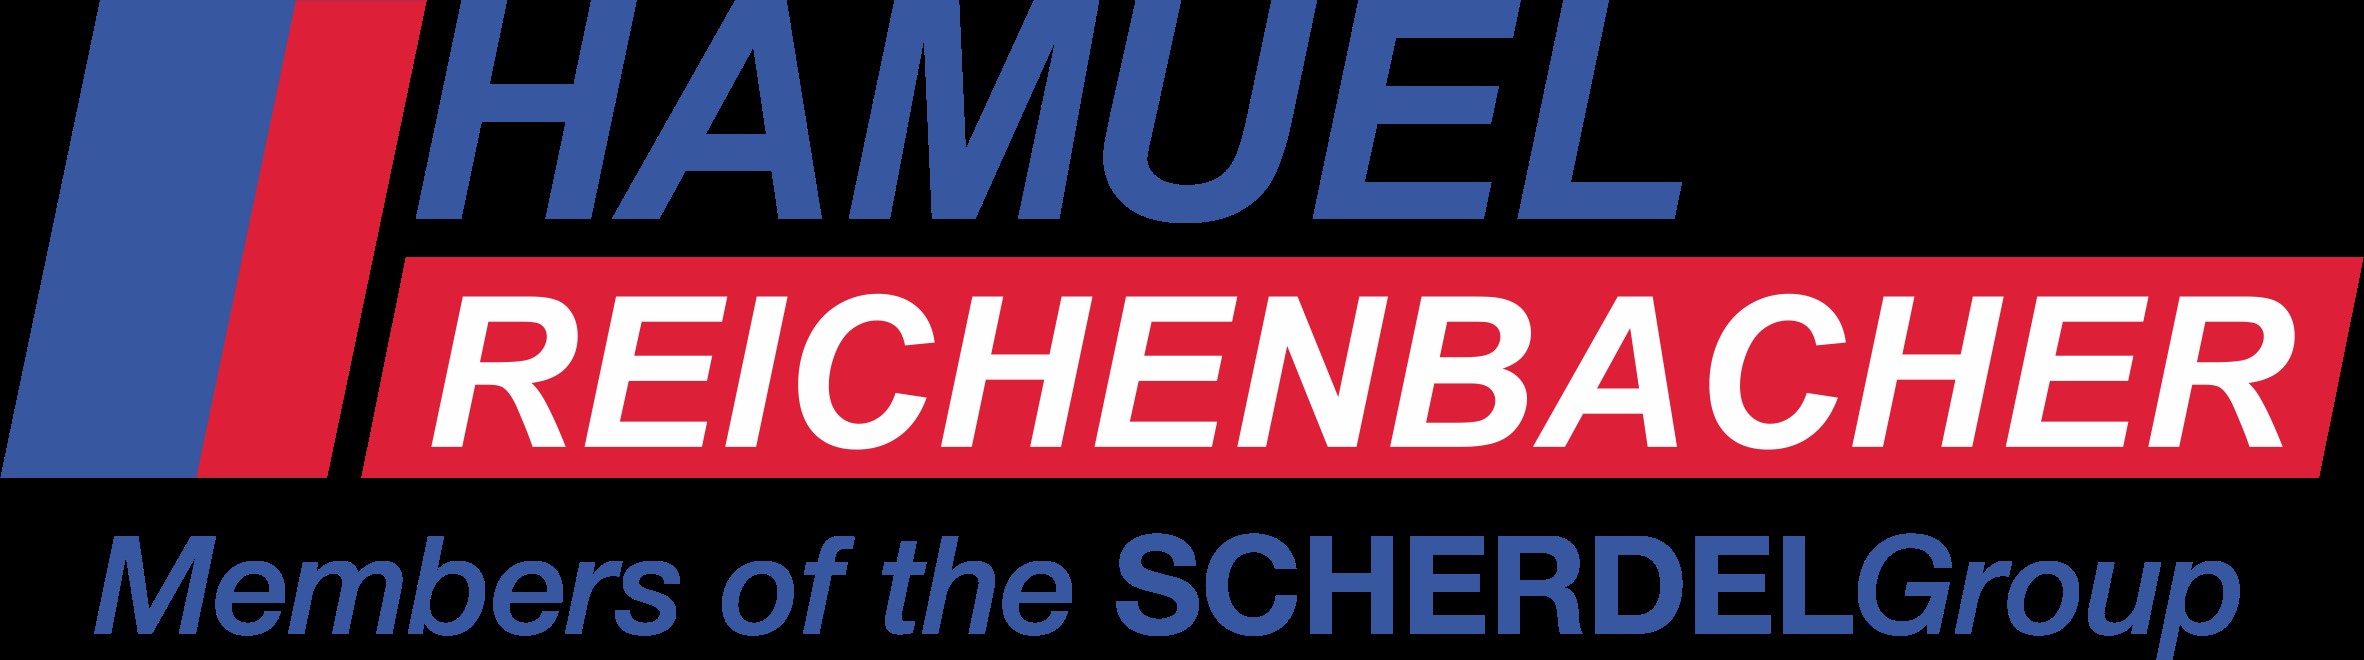 Hamuel Reichenbacher logo